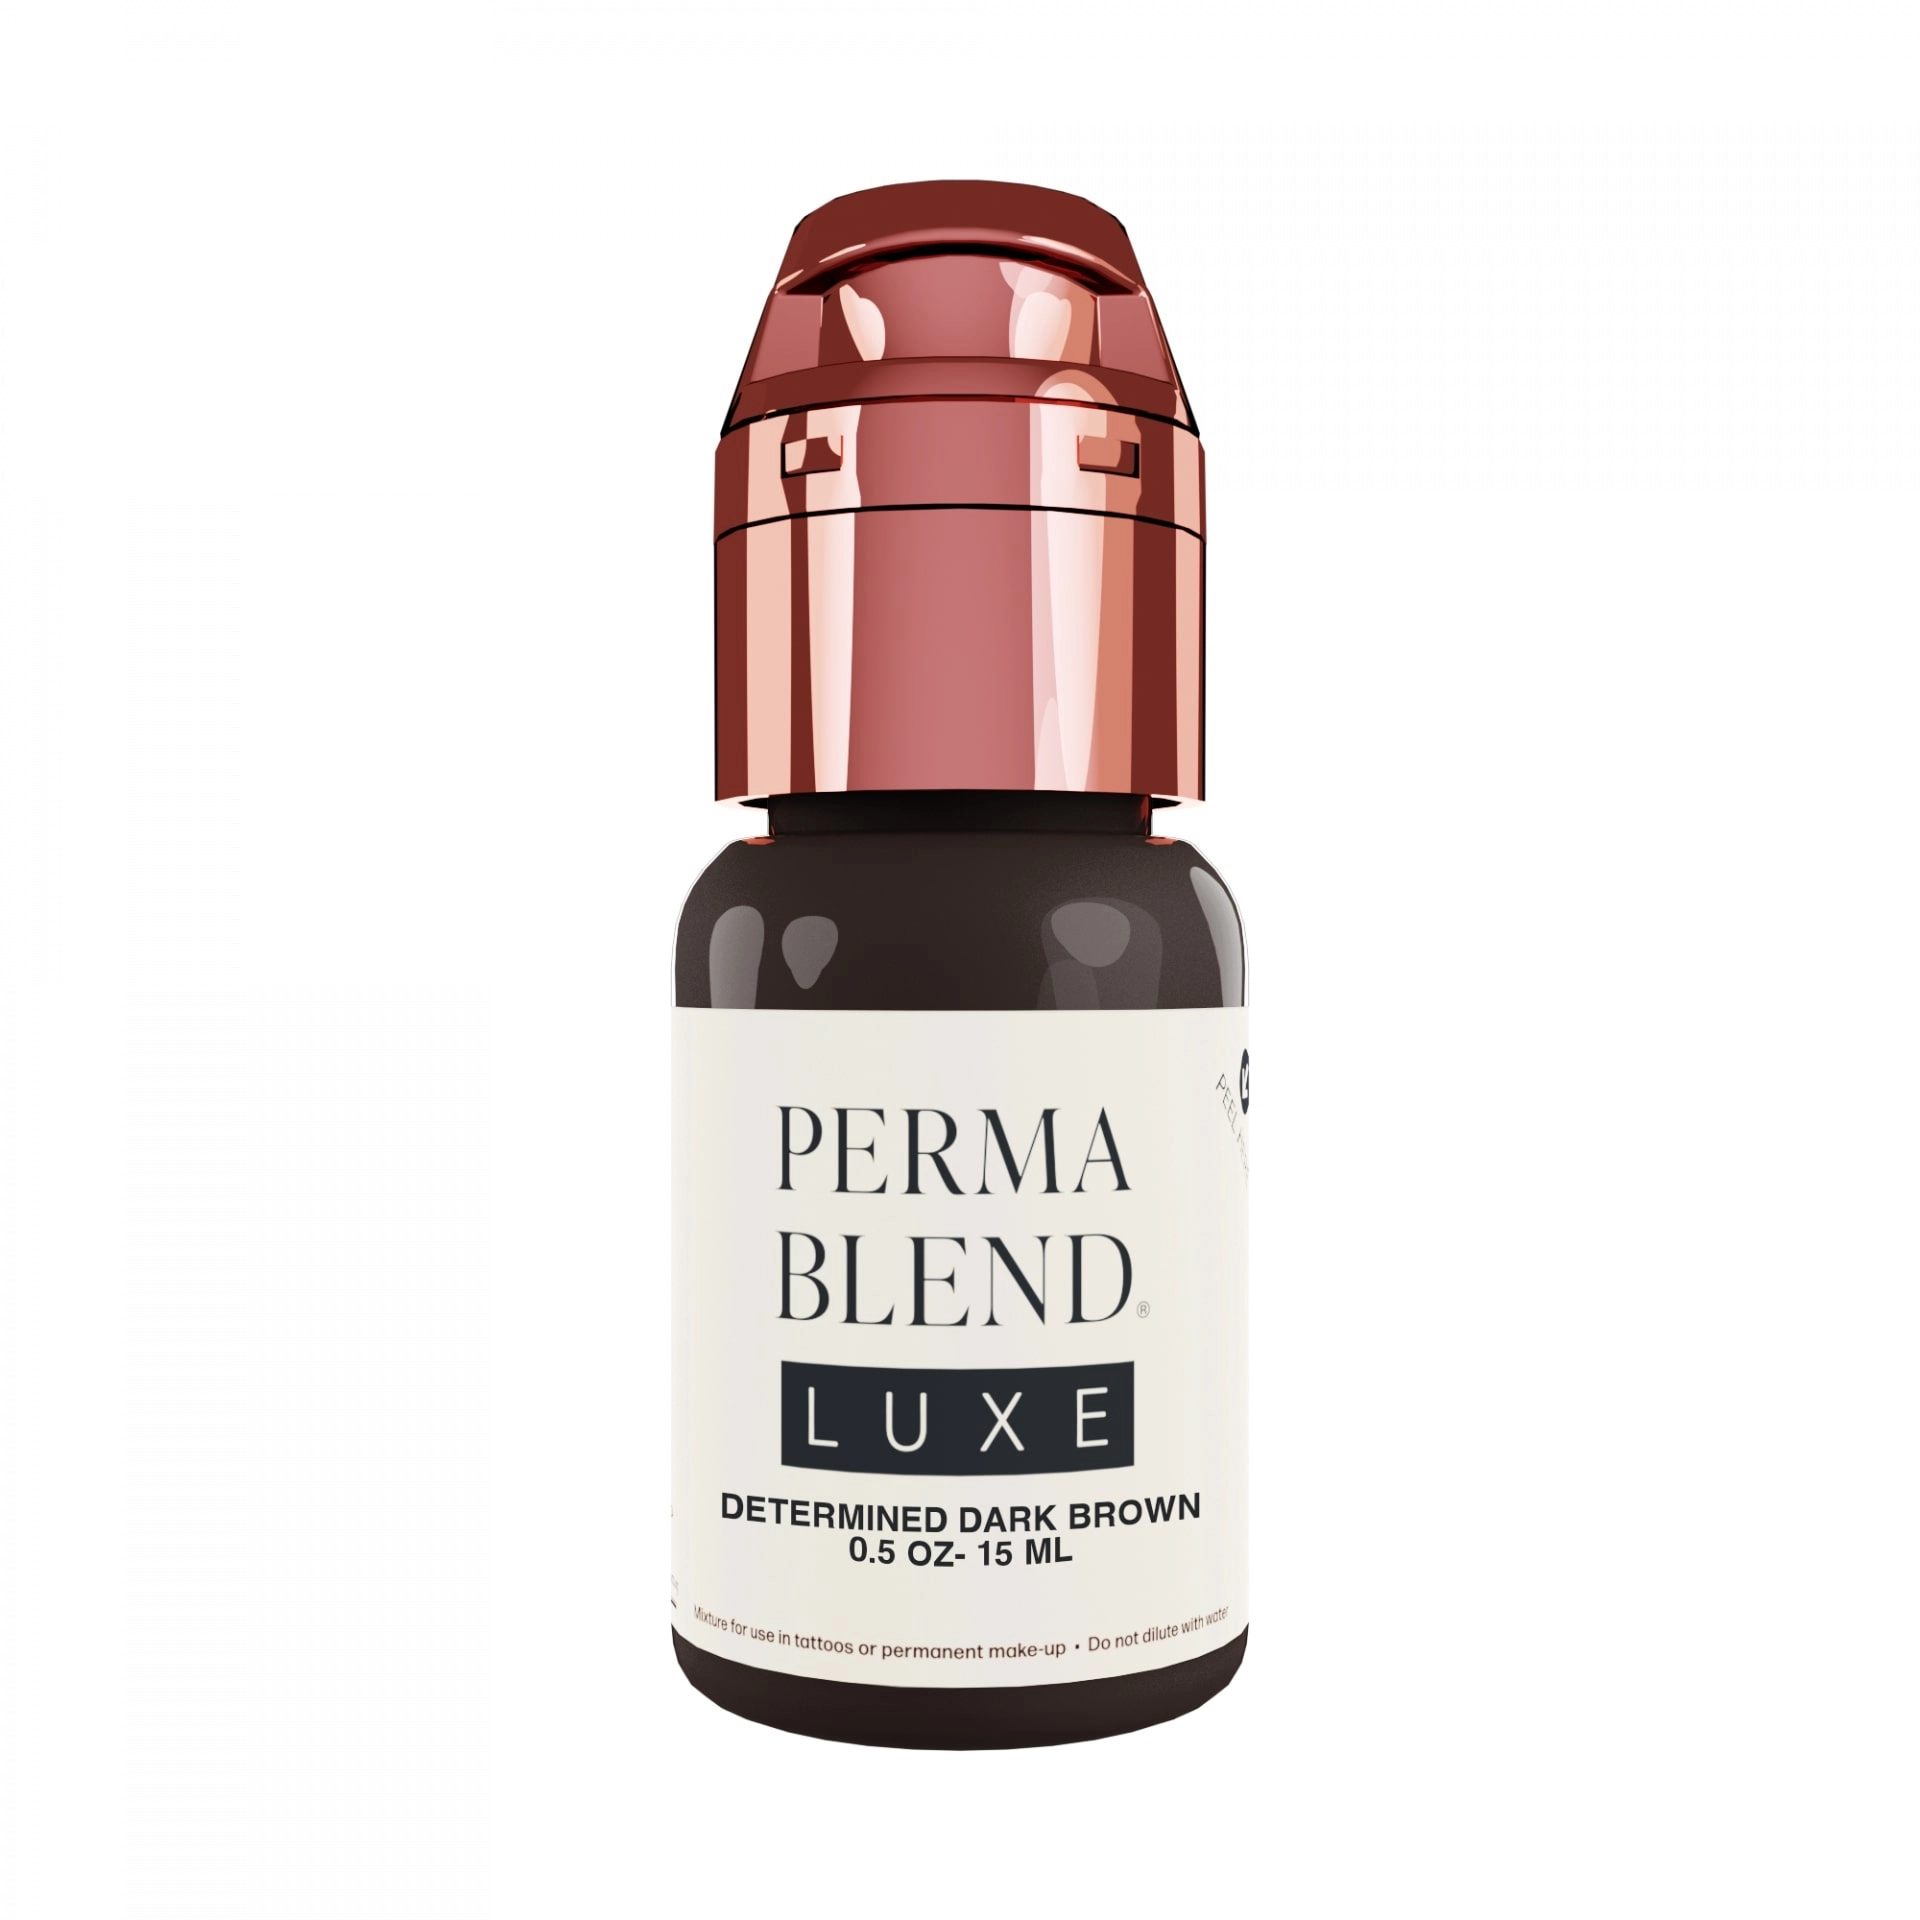 Perma Blend Luxe 15ml - Determined Dark Brown